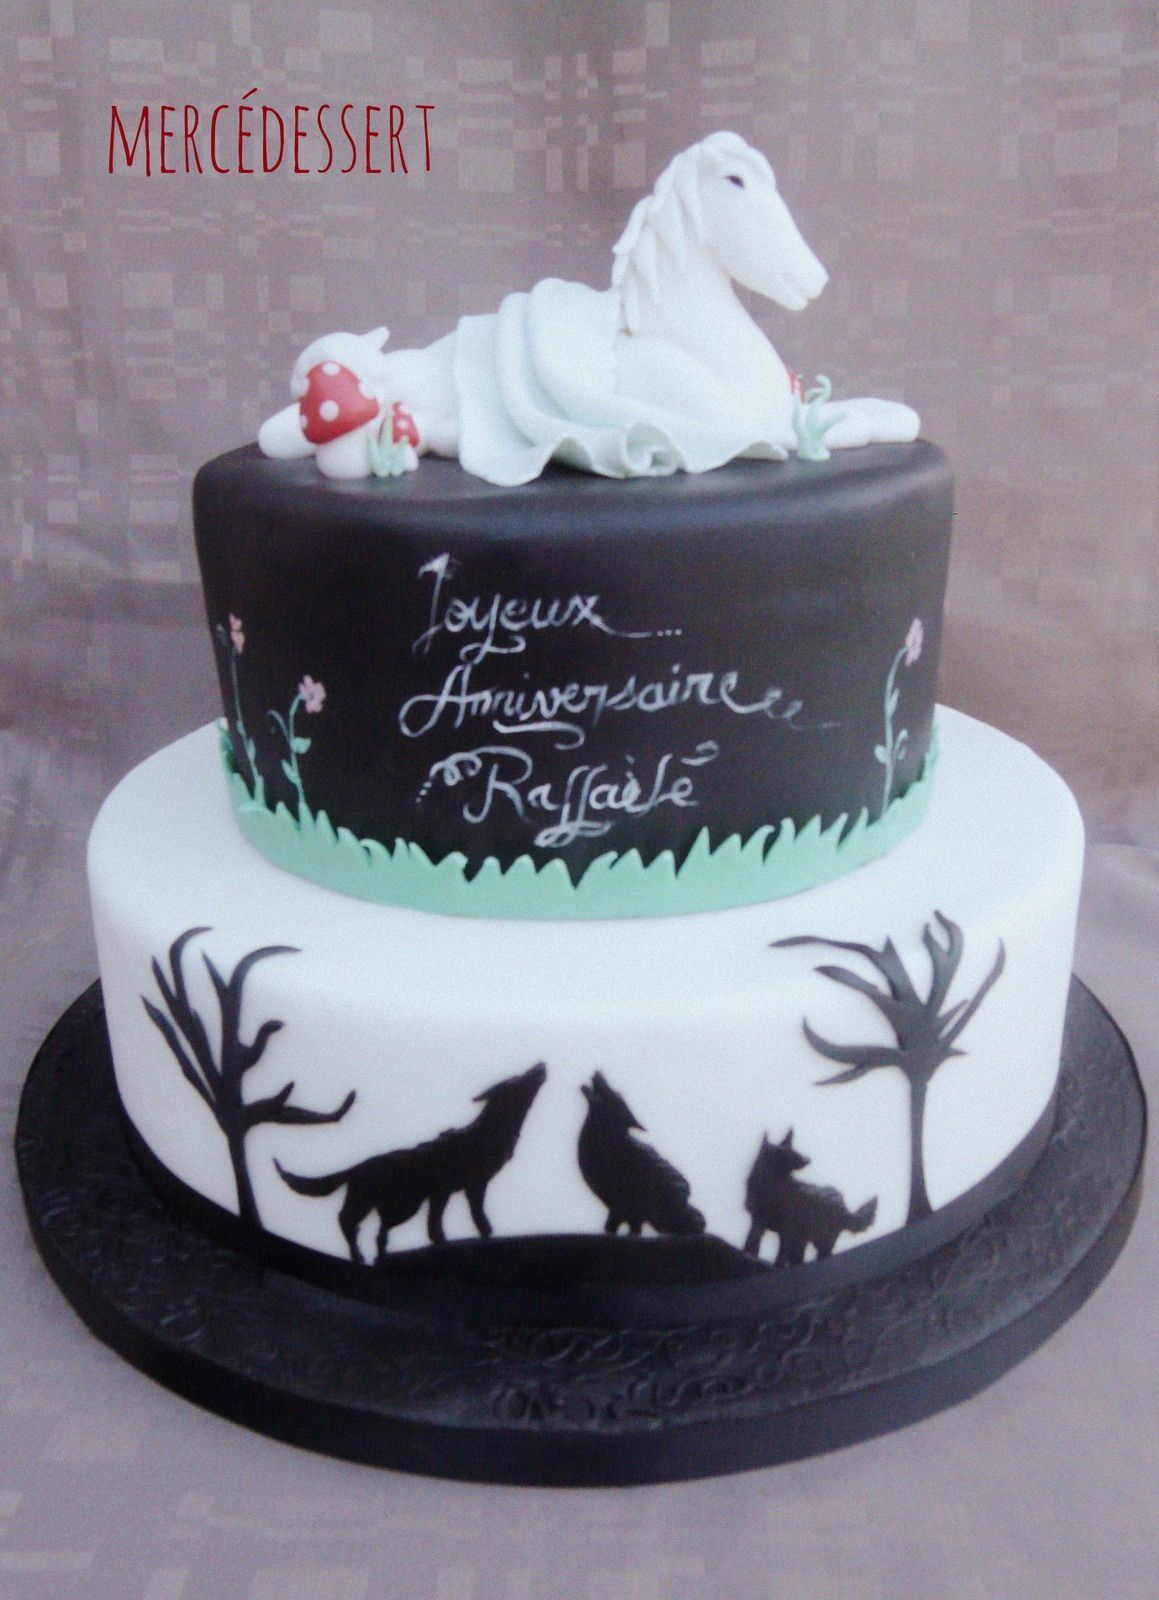 Gâteau cheval et loup - génoise nature et ganache chocolat ; 30 personnes (30 décembre 2014)